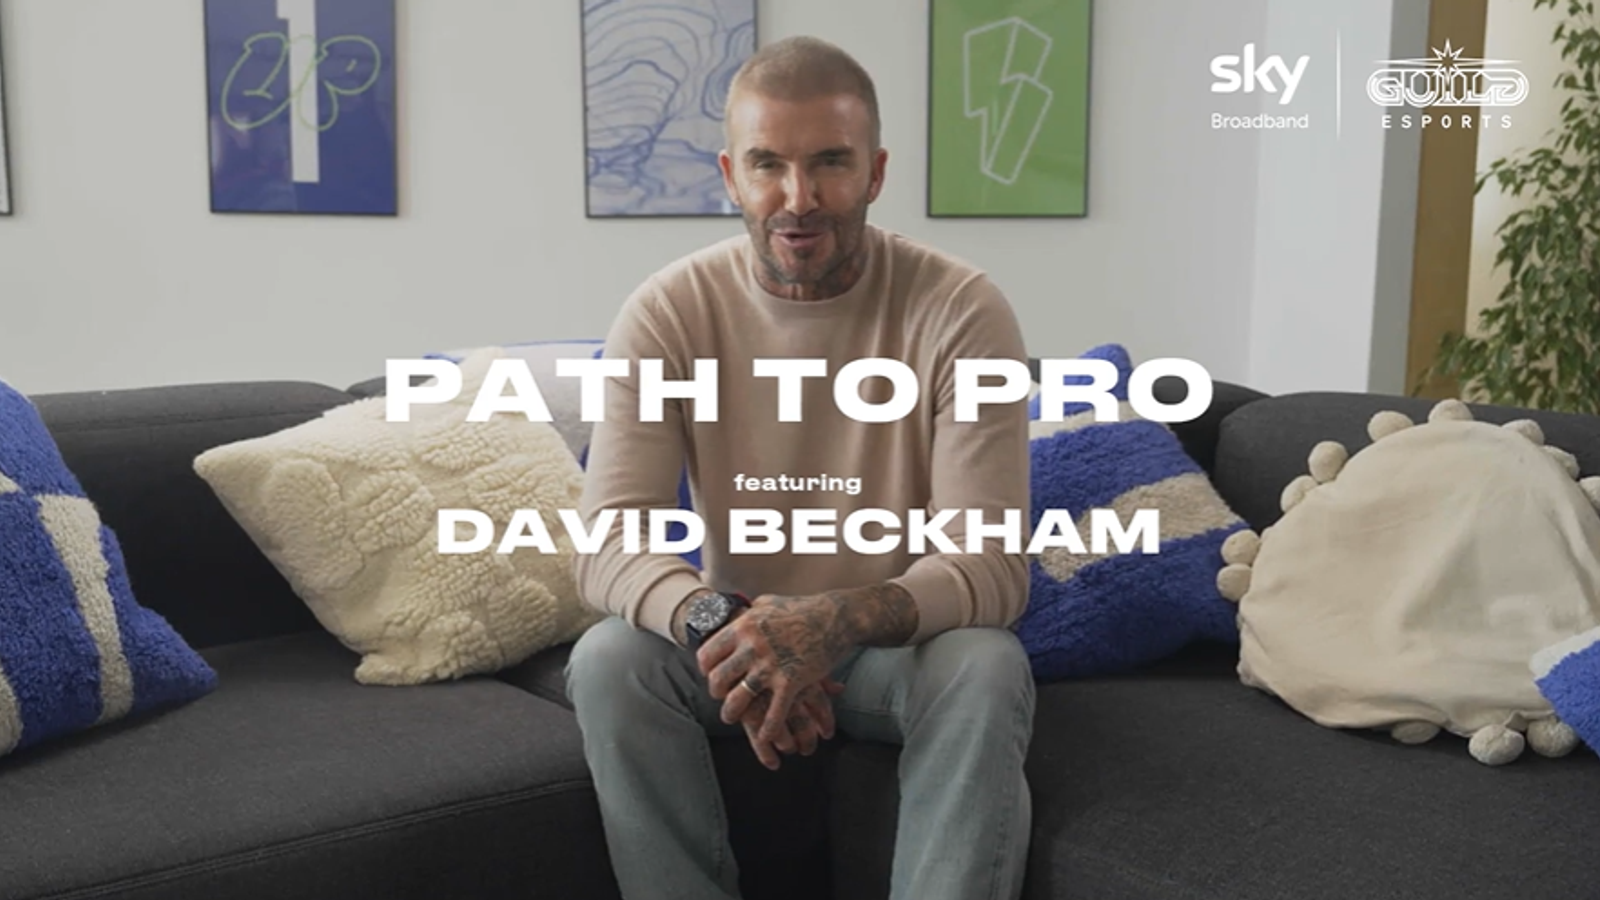 ฝึกซ้อมห้าชั่วโมงต่อวัน อินเทอร์เน็ต และพบกับ David Beckham: Path to Pro |  ข่าวฟุตบอล